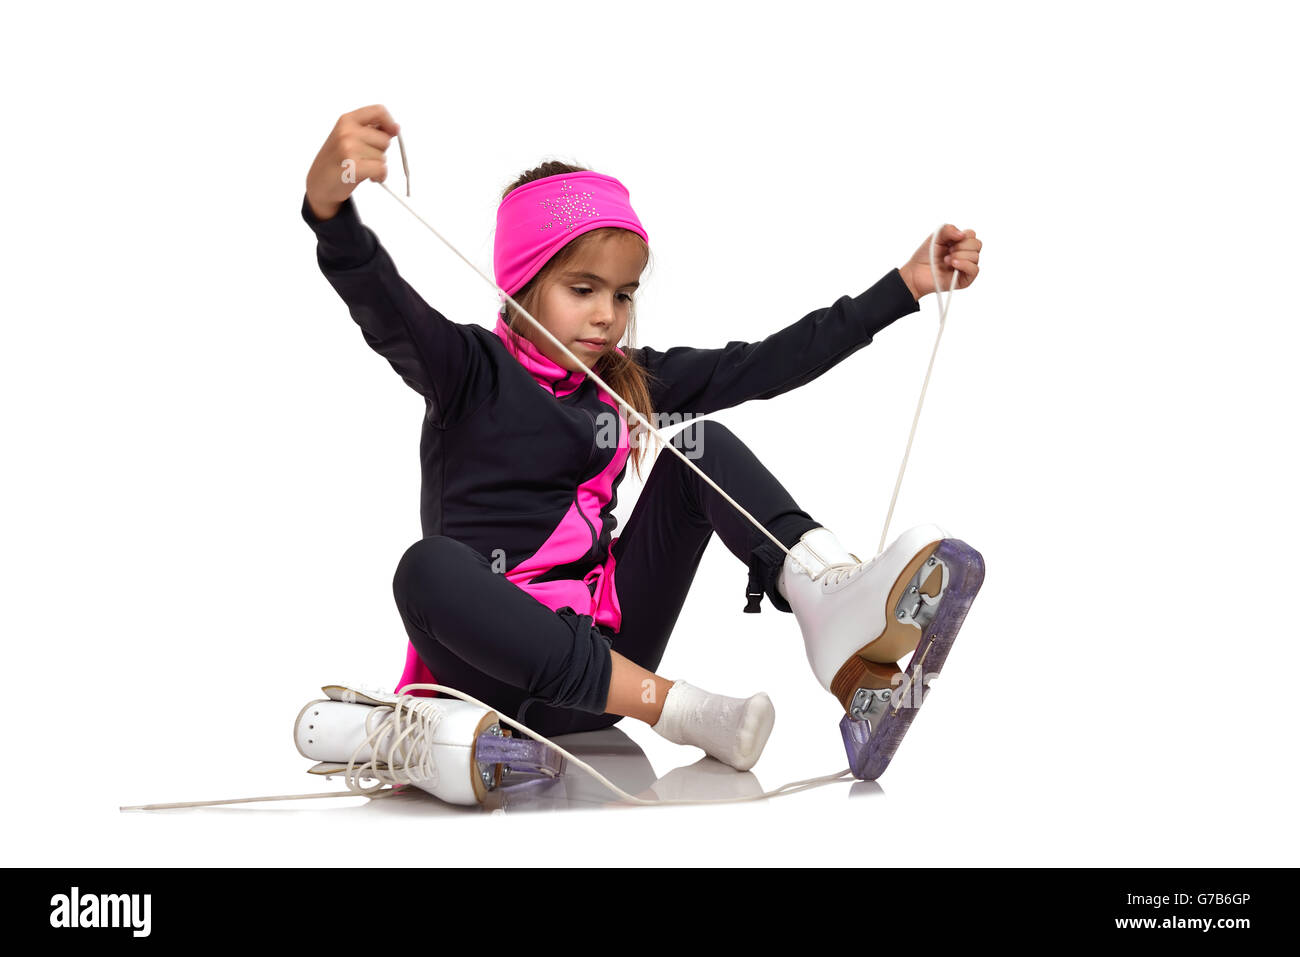 Jeune fille lacets patins de patinage artistique Banque D'Images